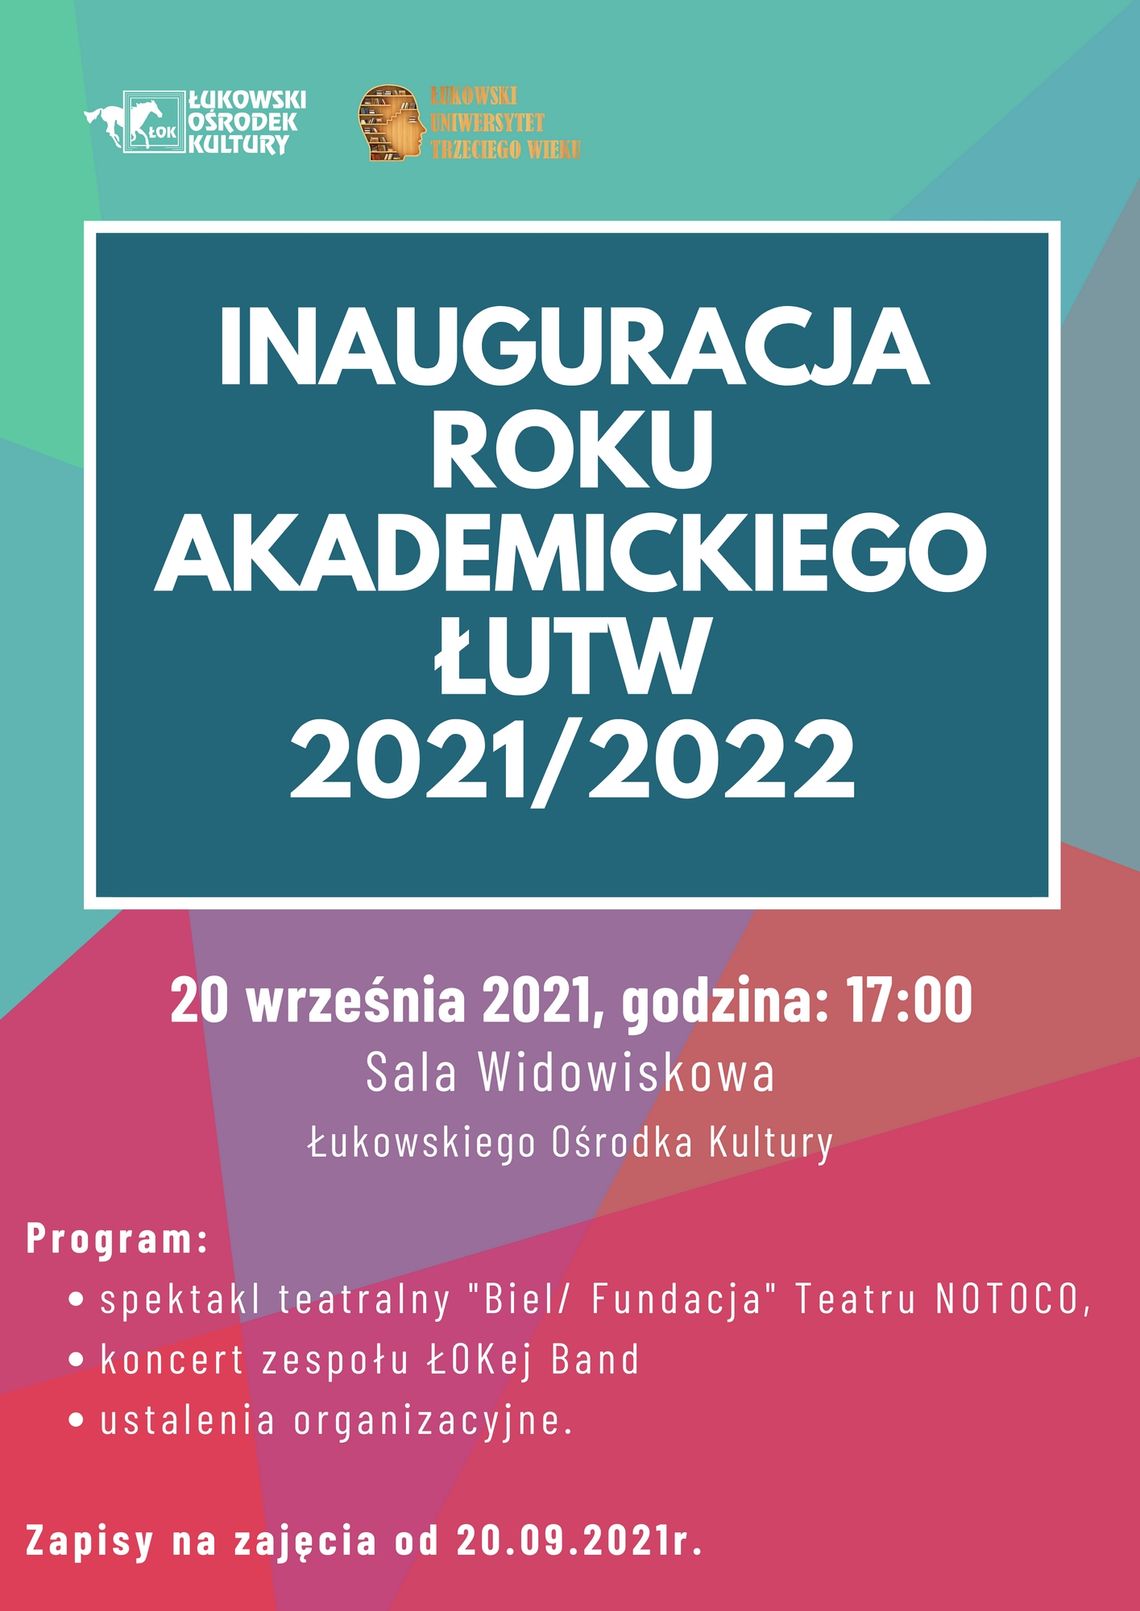 Inauguracja roku akademickiego ŁUTW 2021/2022